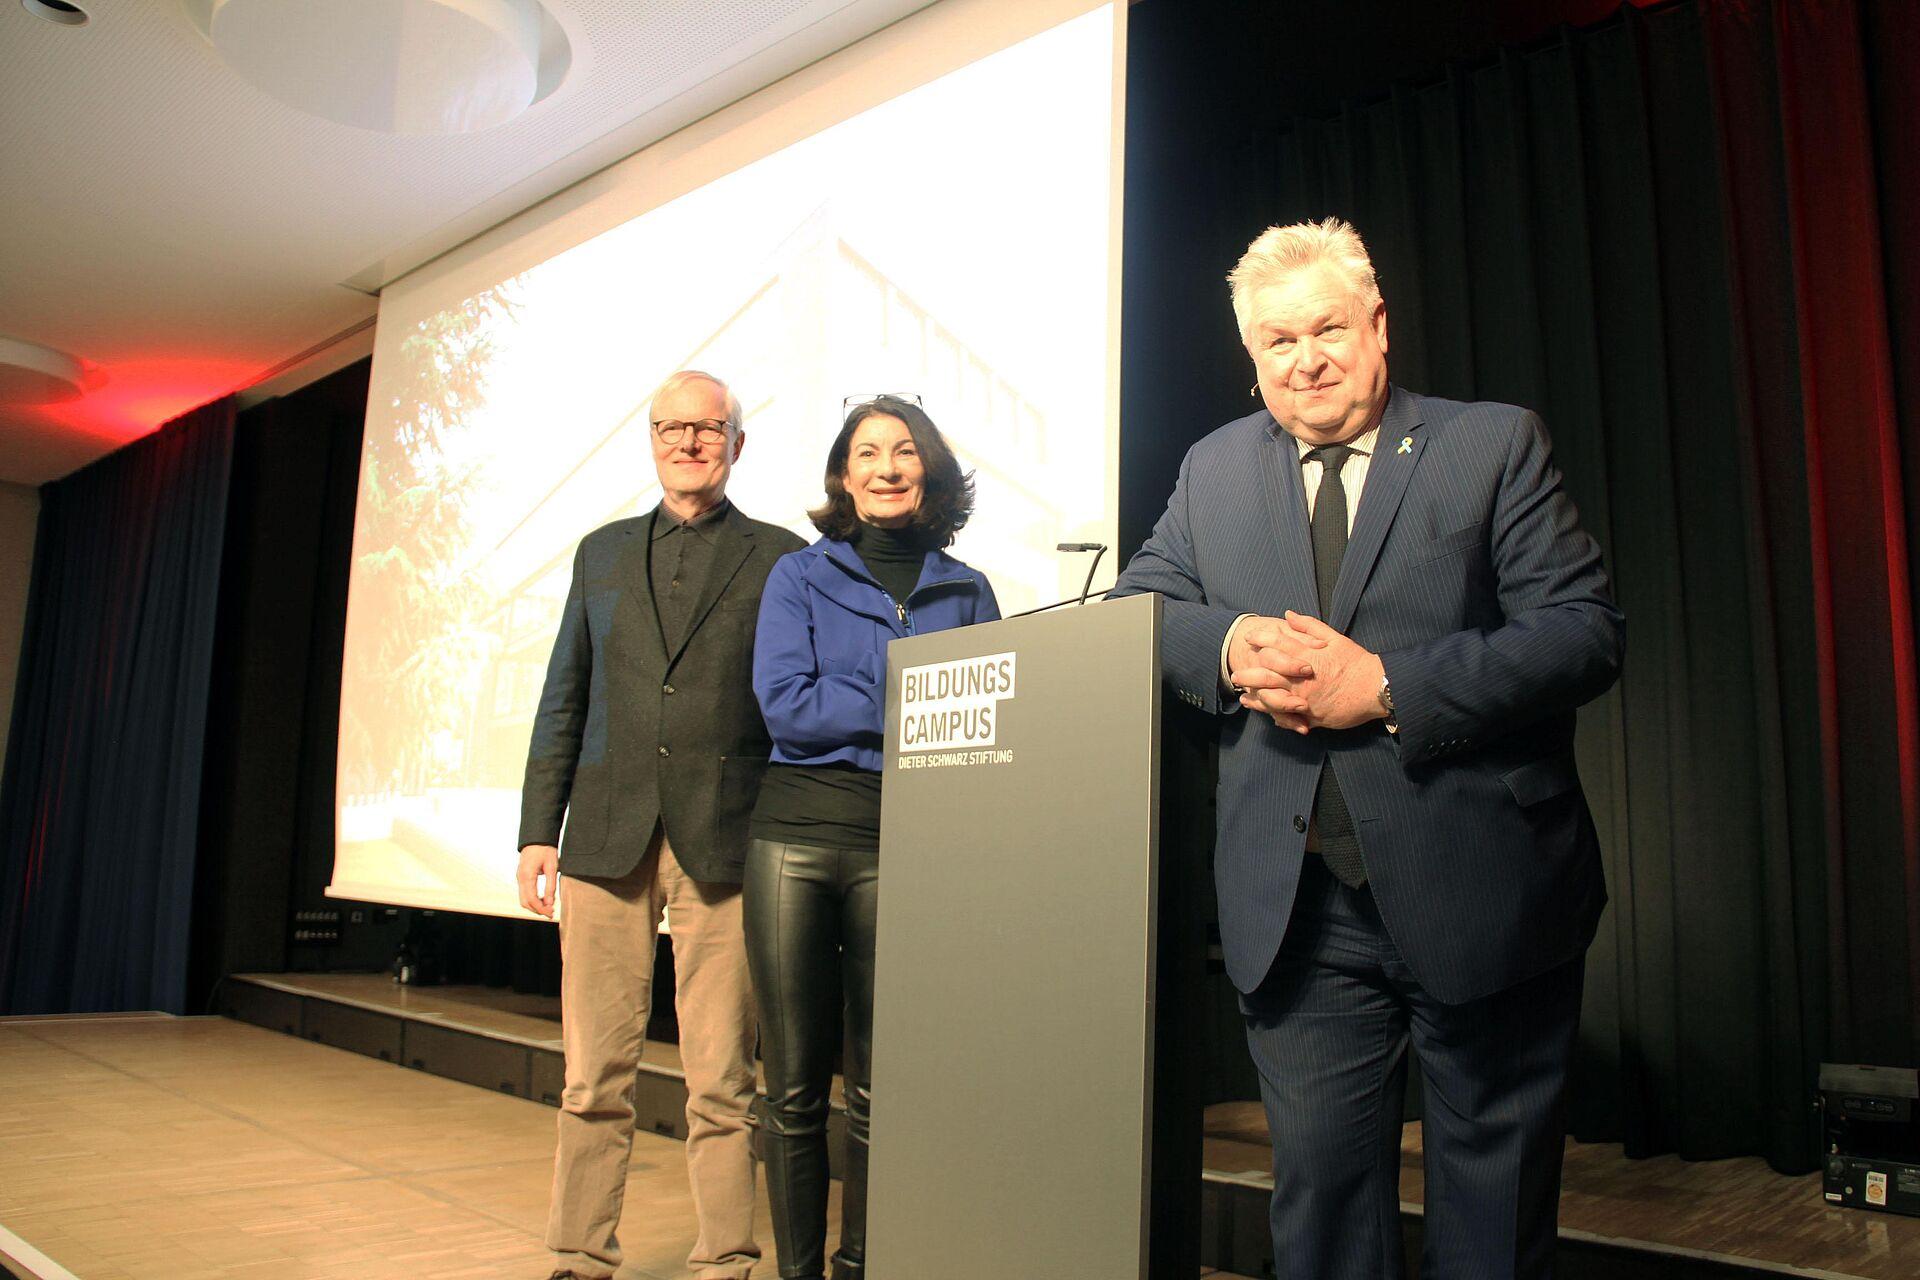 Auf dem Foto sieht man drei Personen auf einer Bühne. Von links nach rechts: Peter Hawighorst, Leiter der Volkshochschule Heilbronn, Prof. Dr. Nicole Graf, Rektorin der DHBW Heilbronn und Michael Georg Link, MdB.